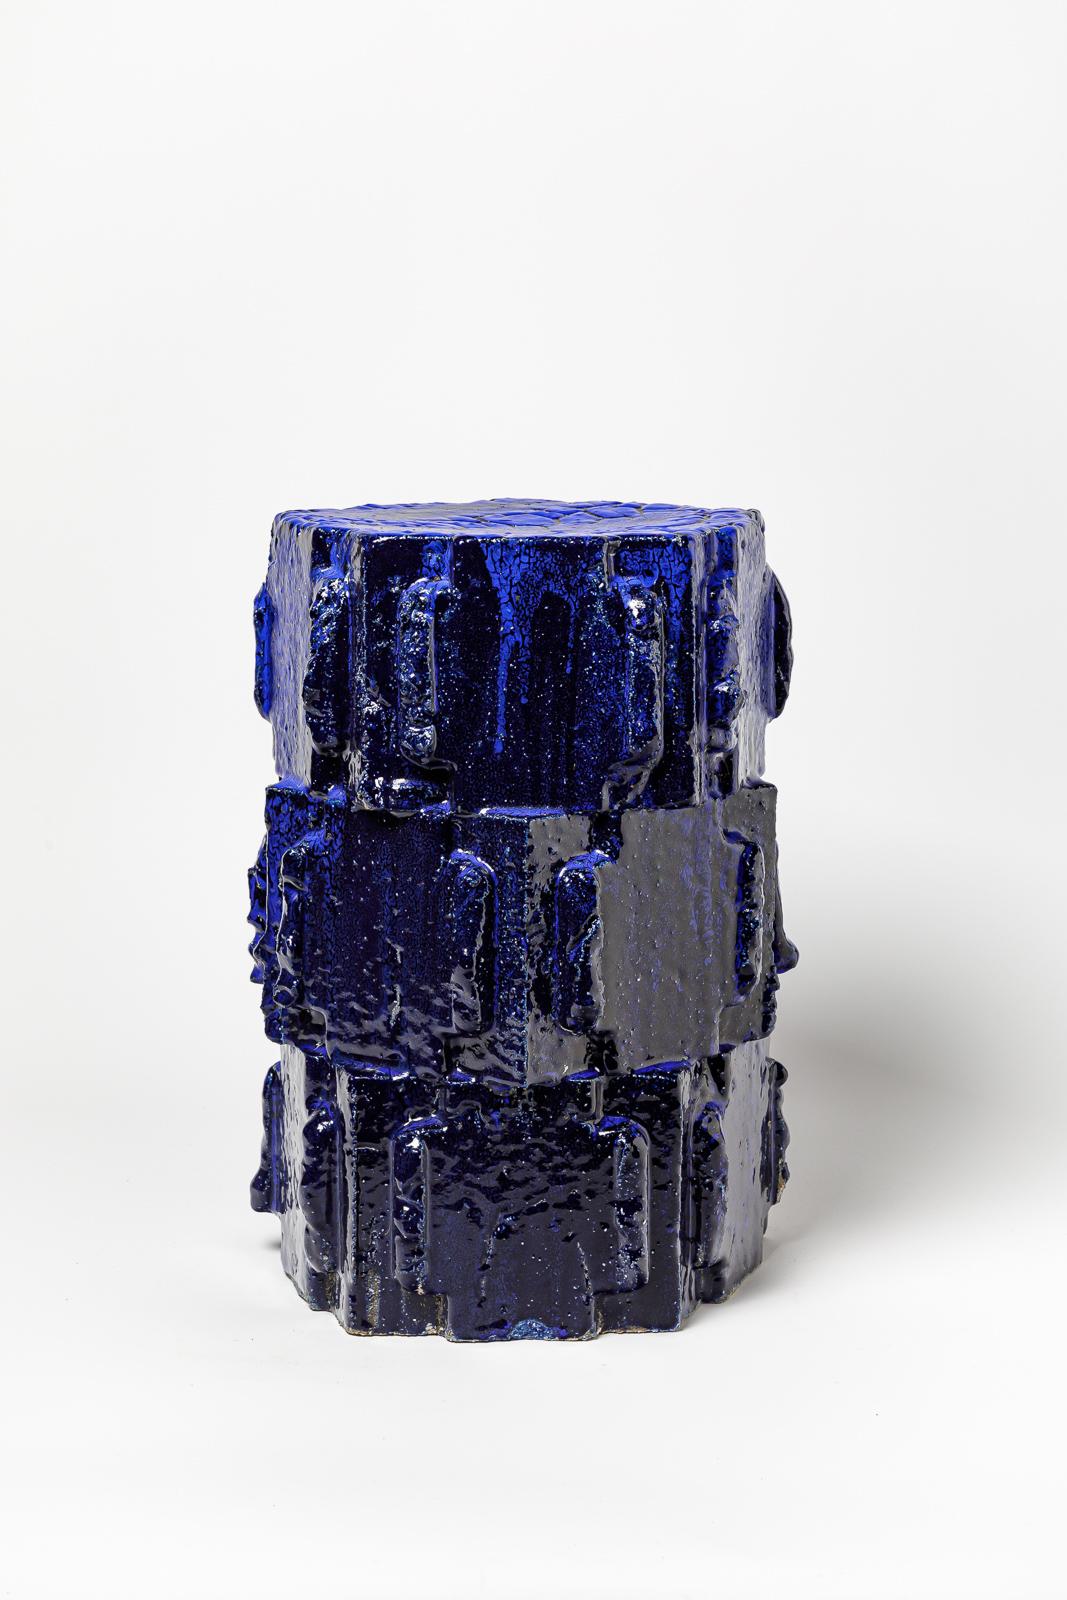 Hocker aus blau glasiertem Bollène-Steinzeug von Jean Ponsart.
Künstlermonogramm am Sockel. 2023.
H : 17,5' x 11,2' x 11,2 Zoll.